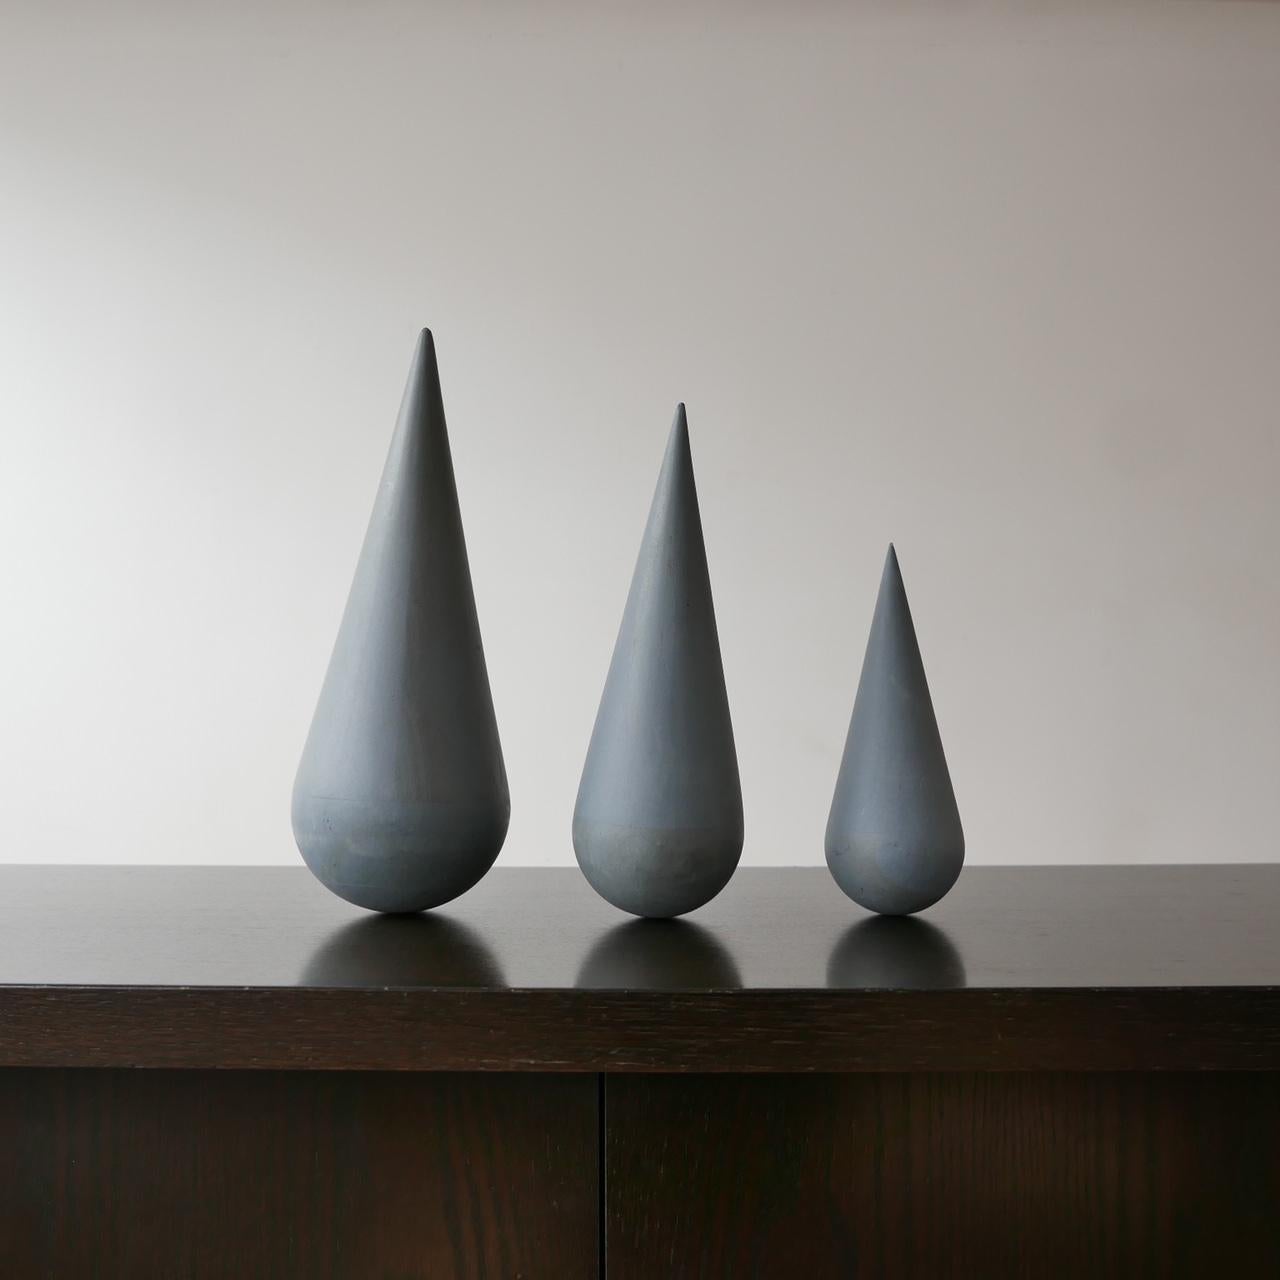 Set of Modernist Geometric Artist Sculptures 1